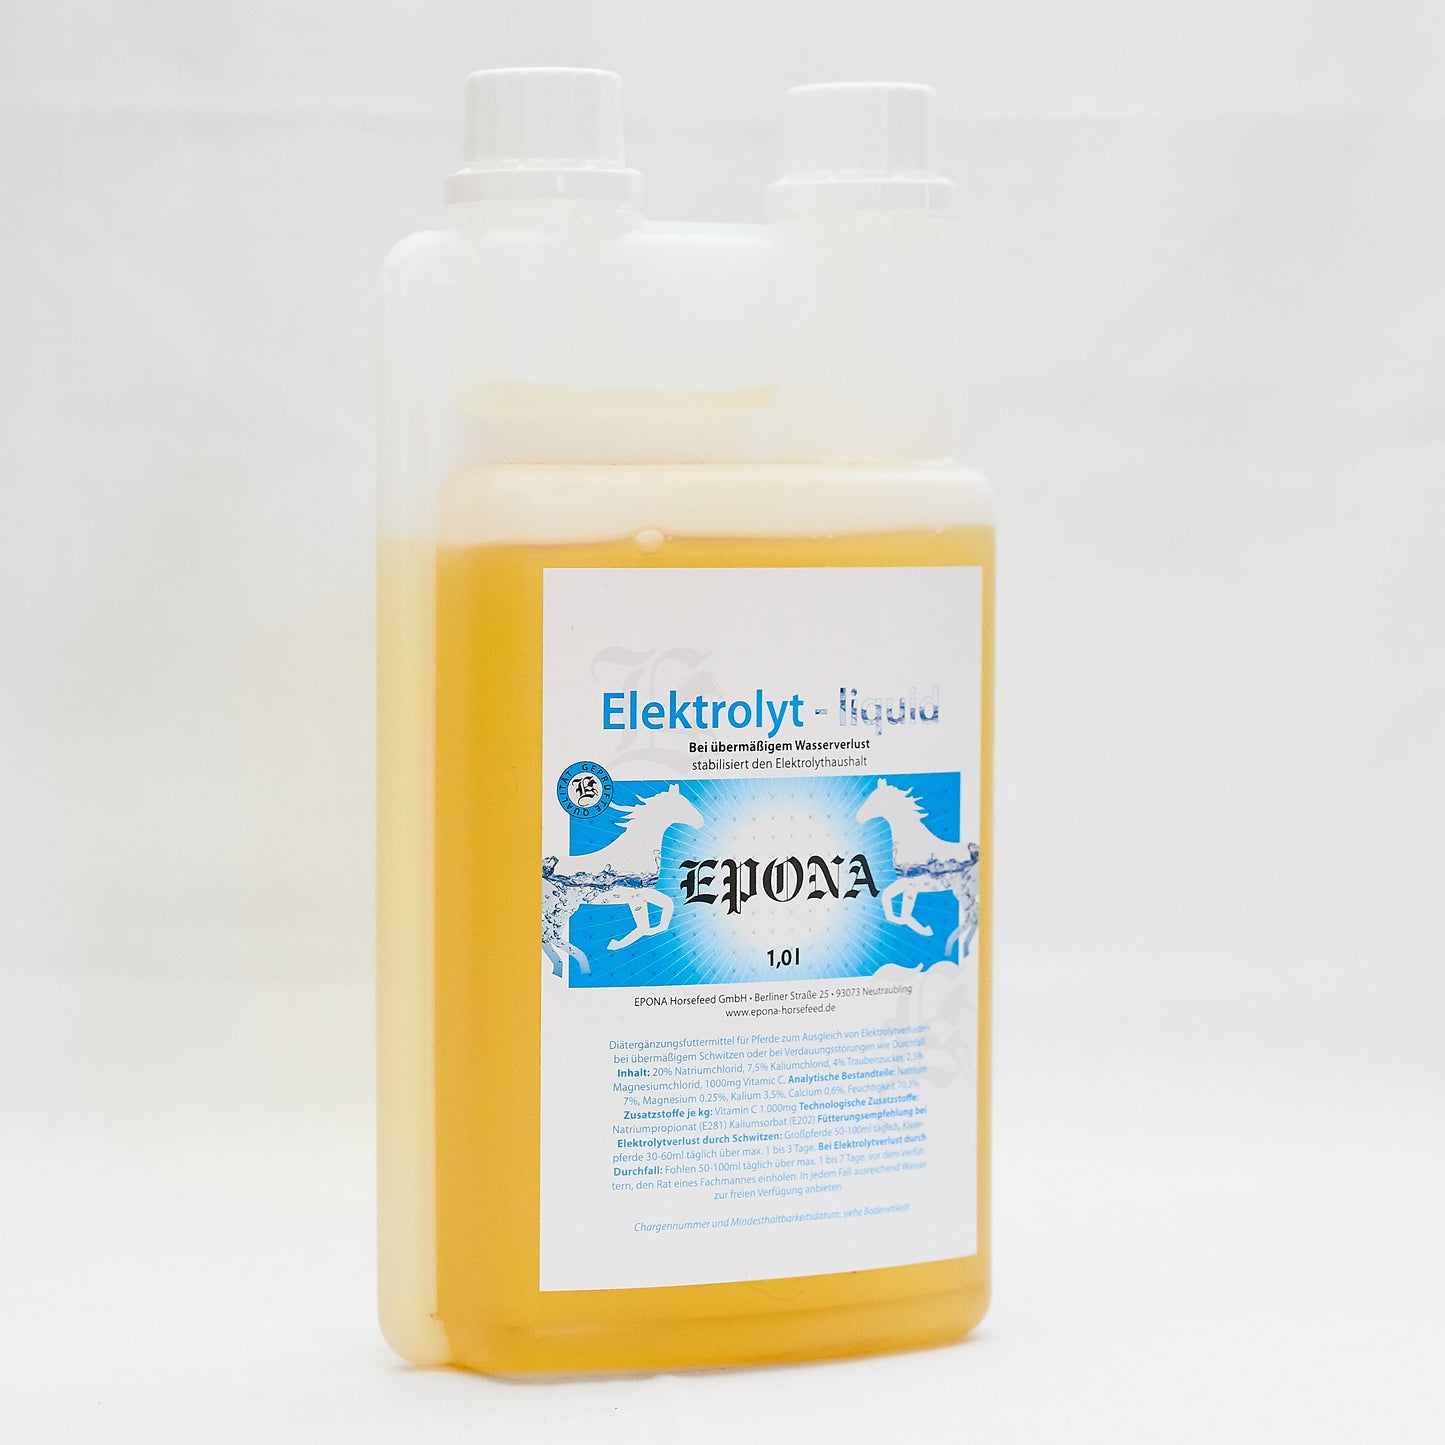 Elektrolyt liquid mit Vitamin C und Traubenzucker nach starkem Schwitzen und Wasserverlusten